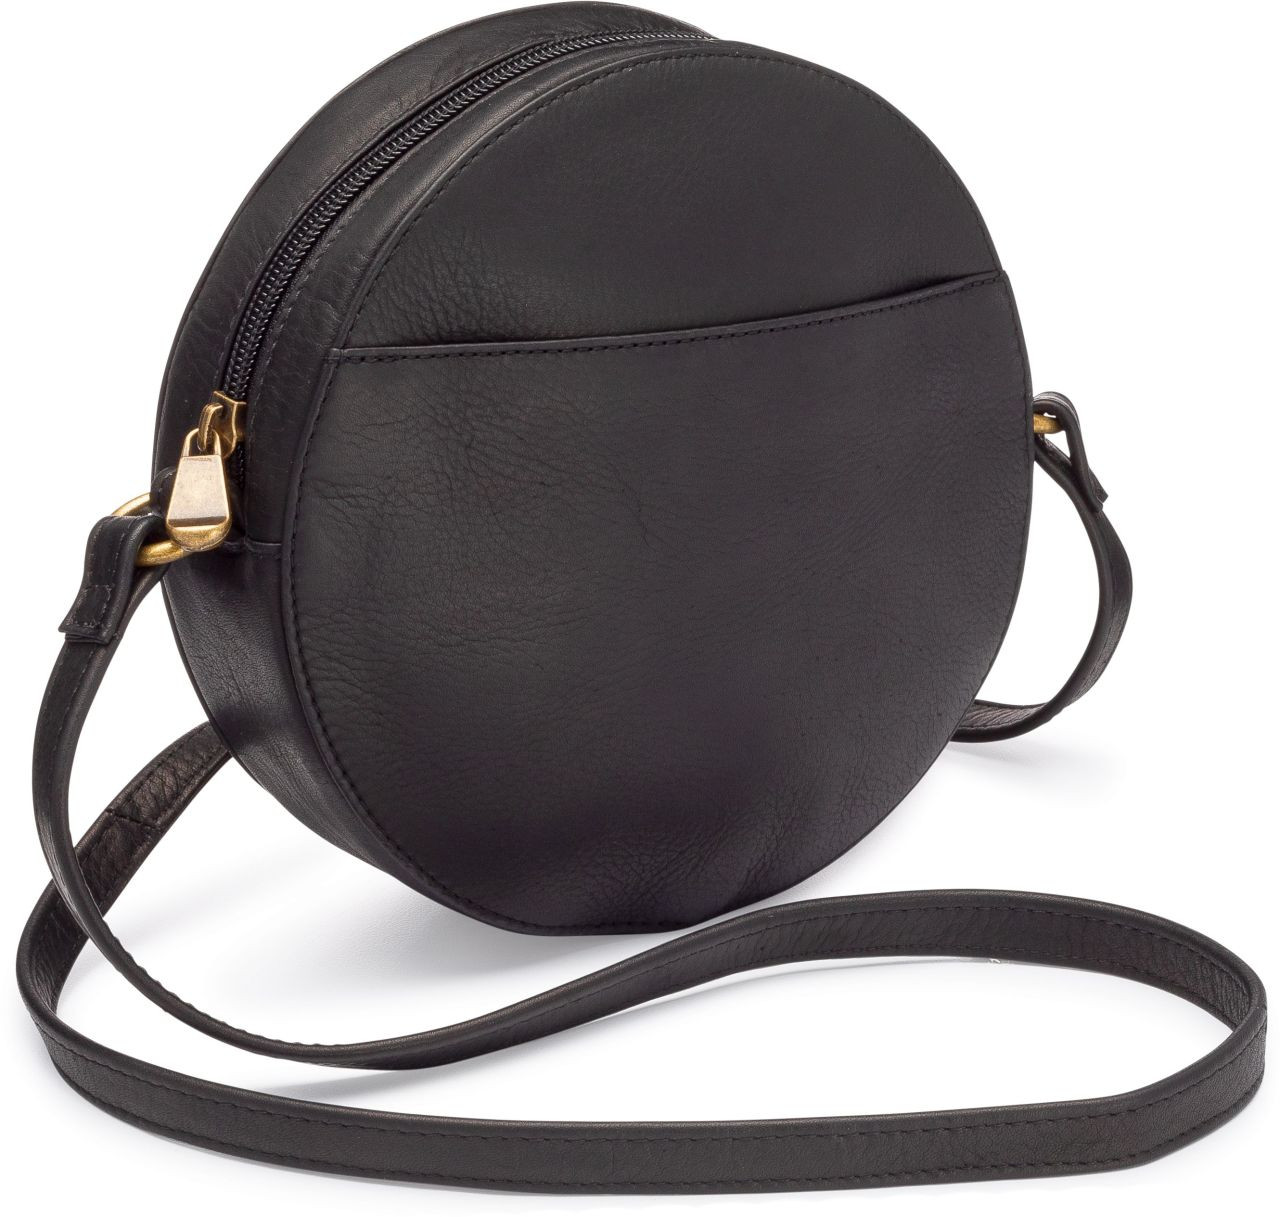 DELUXE Canteen Round Purse – Virginia Handbags